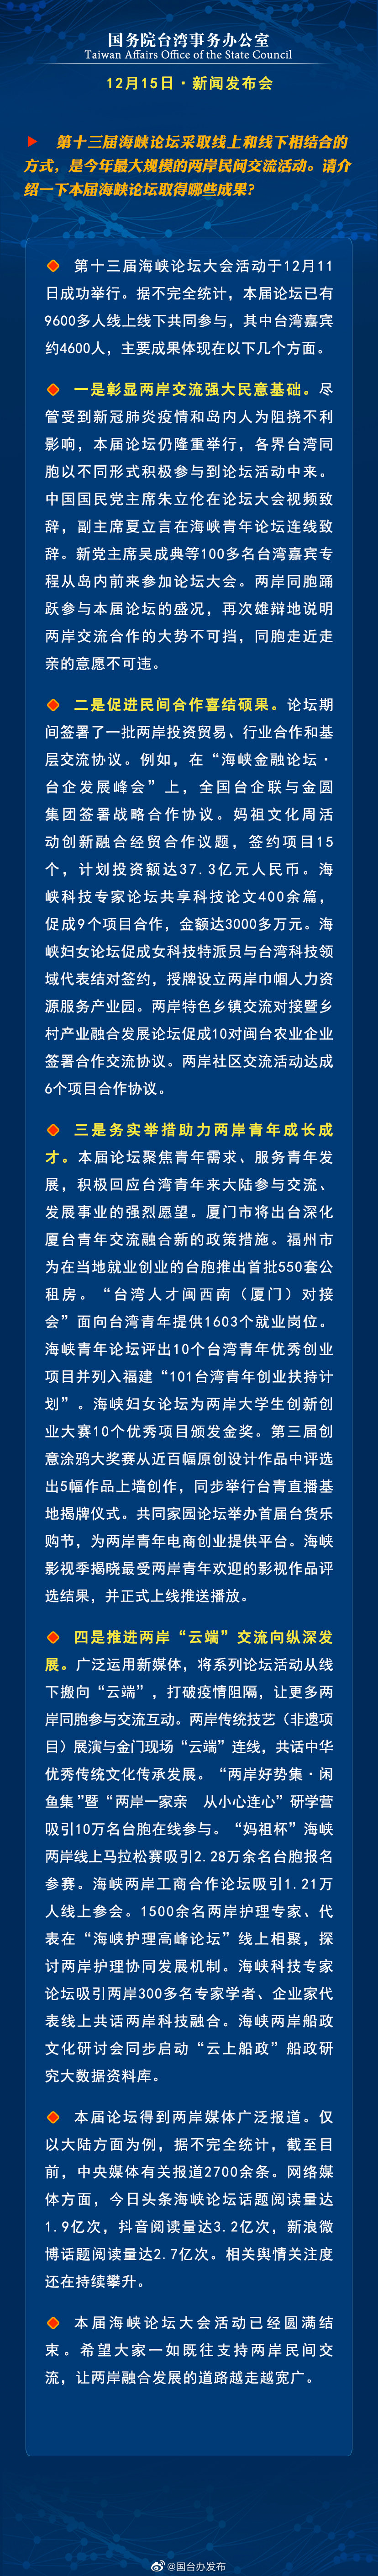 国务院台湾事务办公室12月15日·新闻发布会